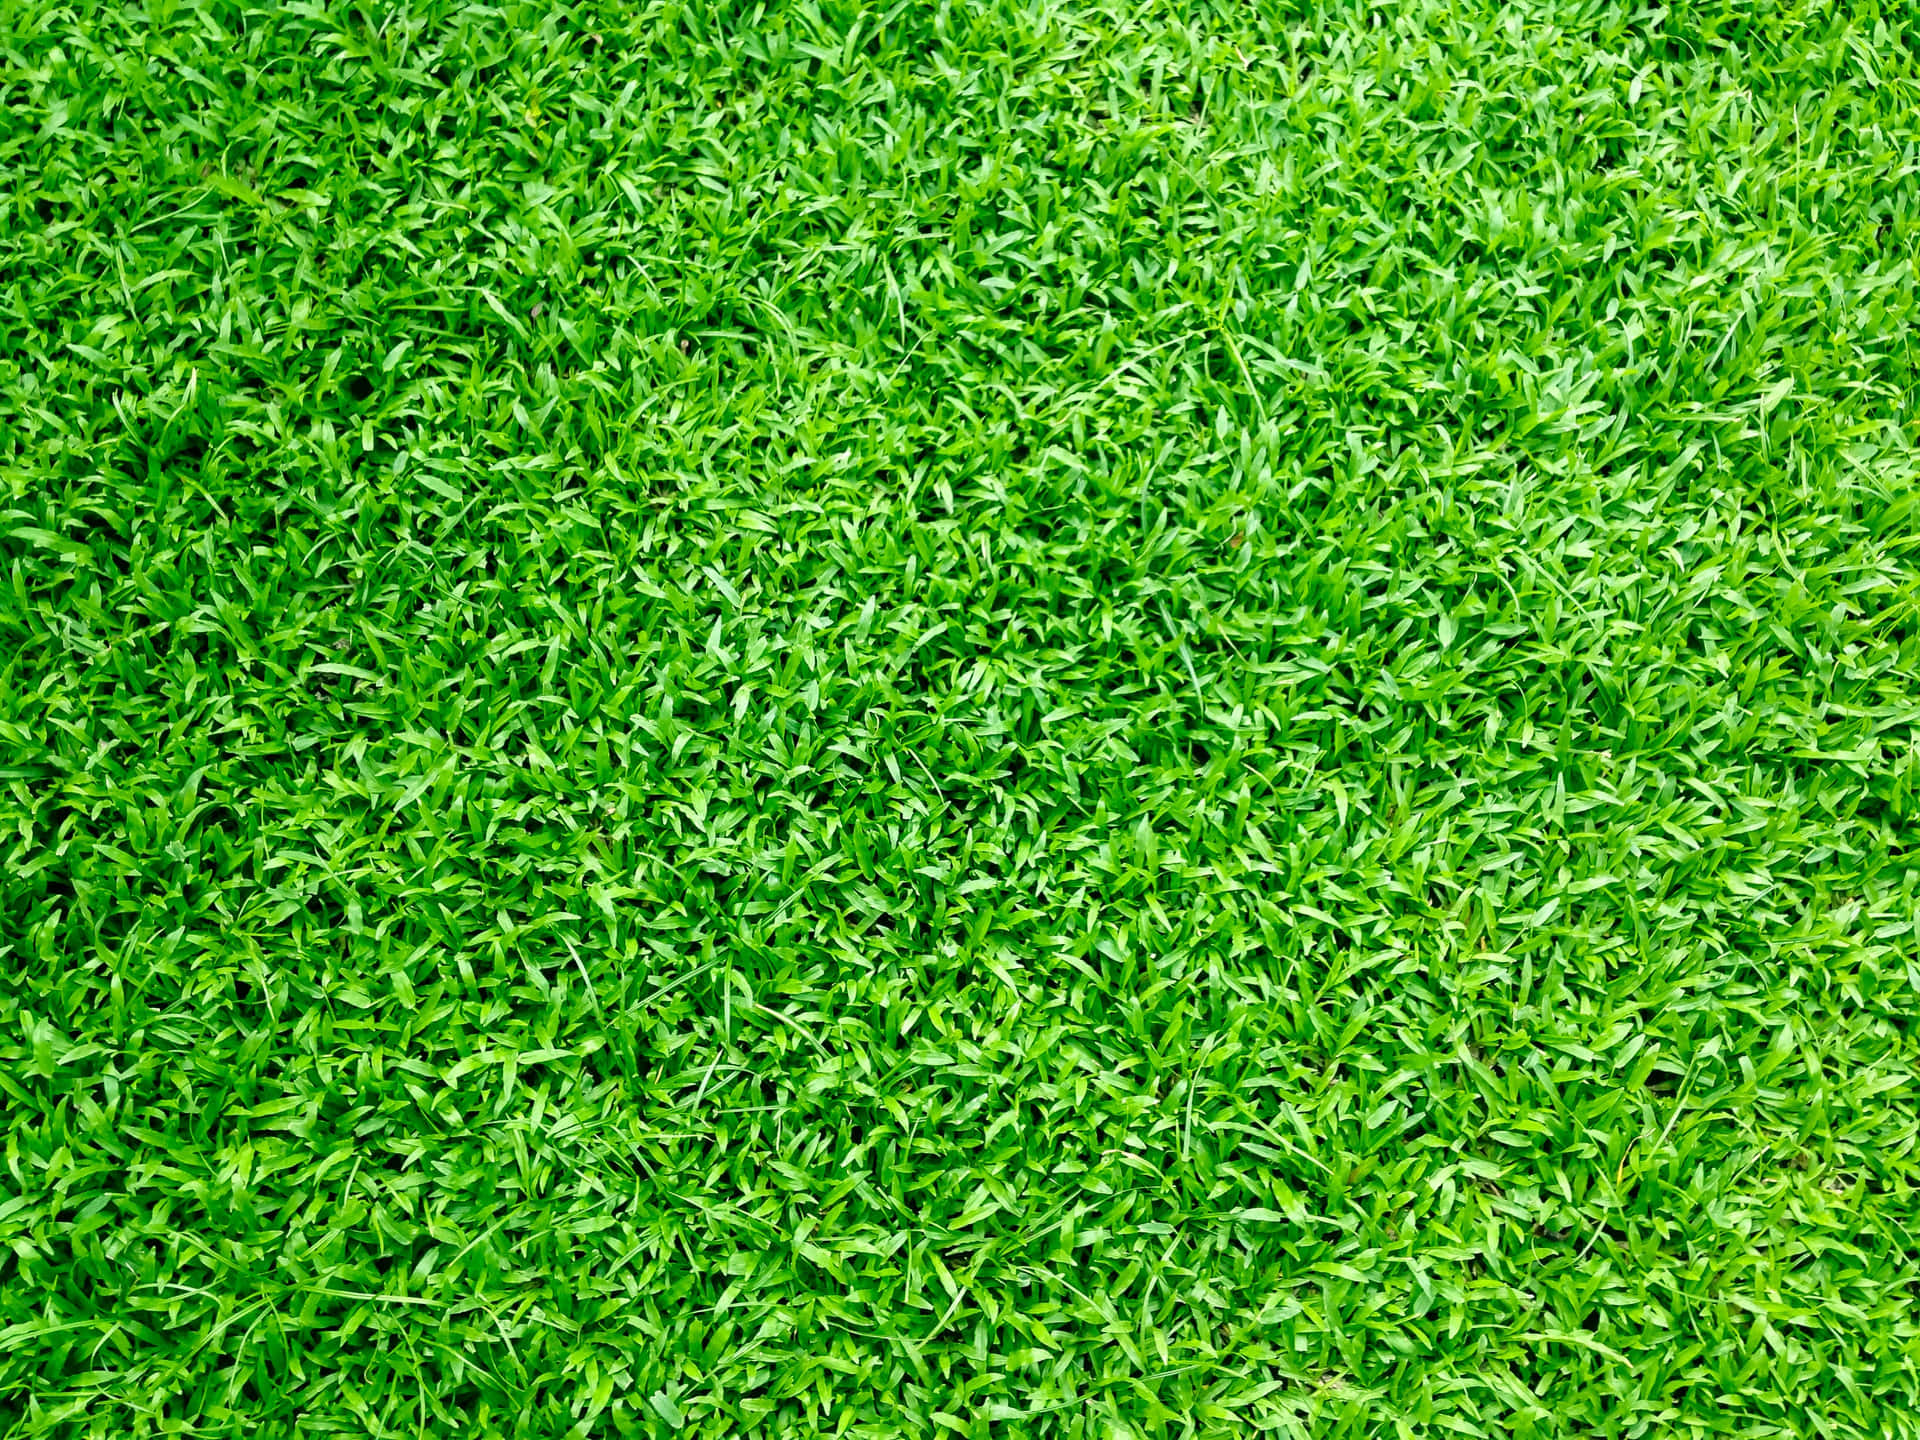 A beautiful emerald carpet of green grass.